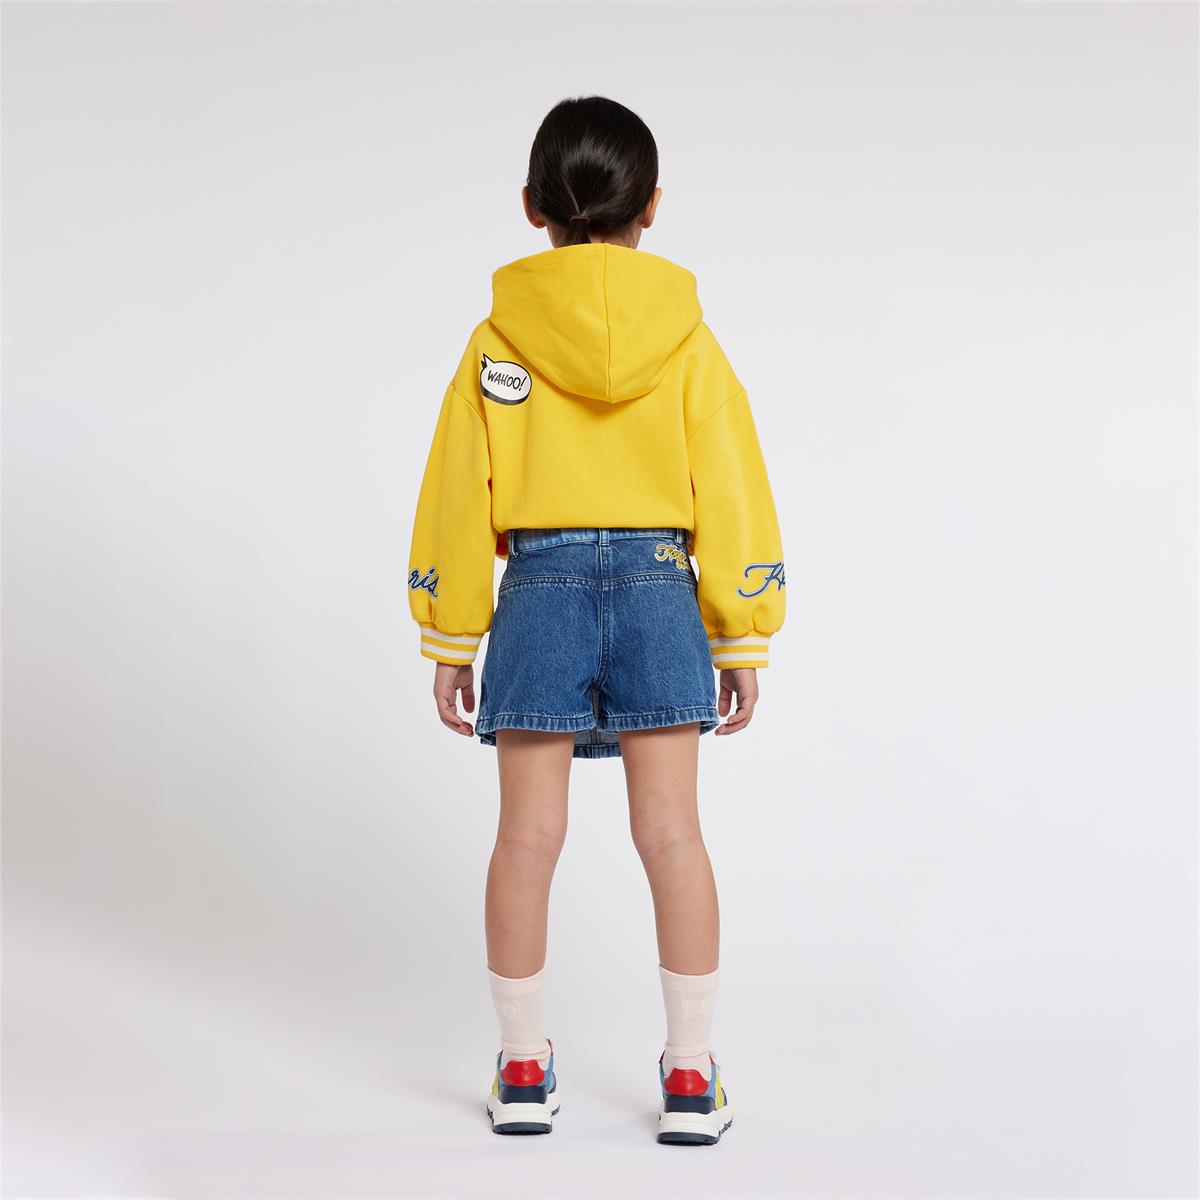 Girls Yellow Hooded Cotton Sweatshirt